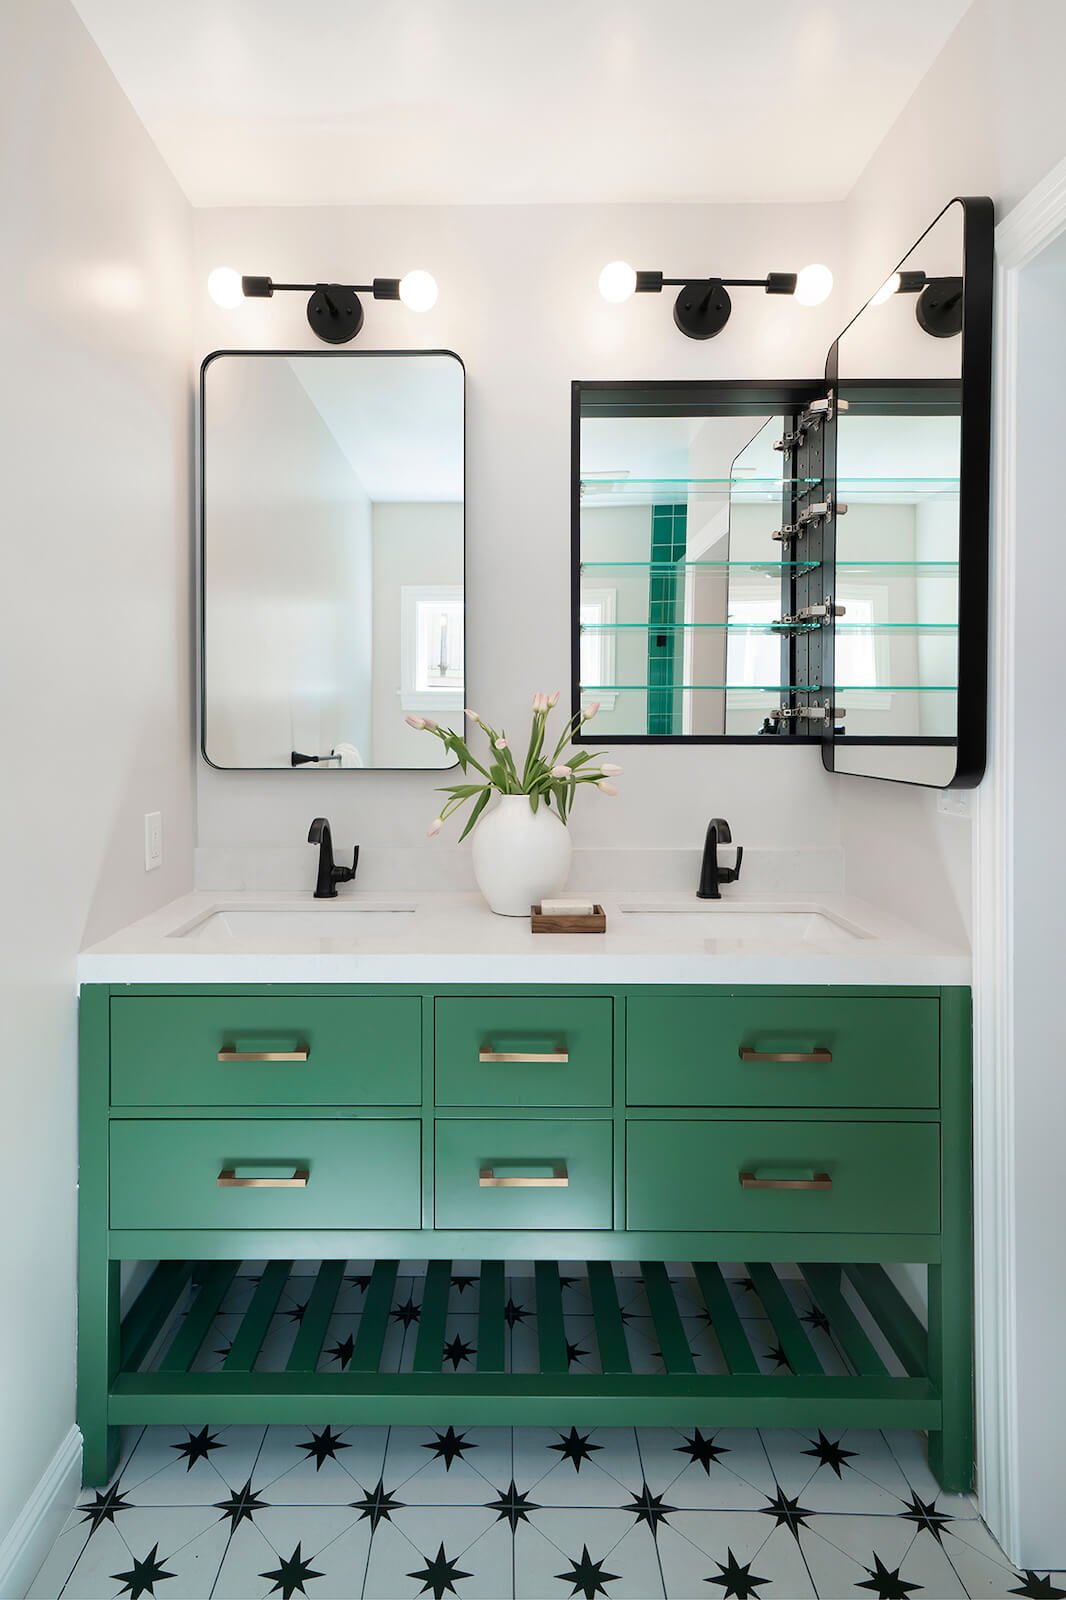 Berkeley Bathroom Remodel - Mirrored Vanity Cabinet.jpg